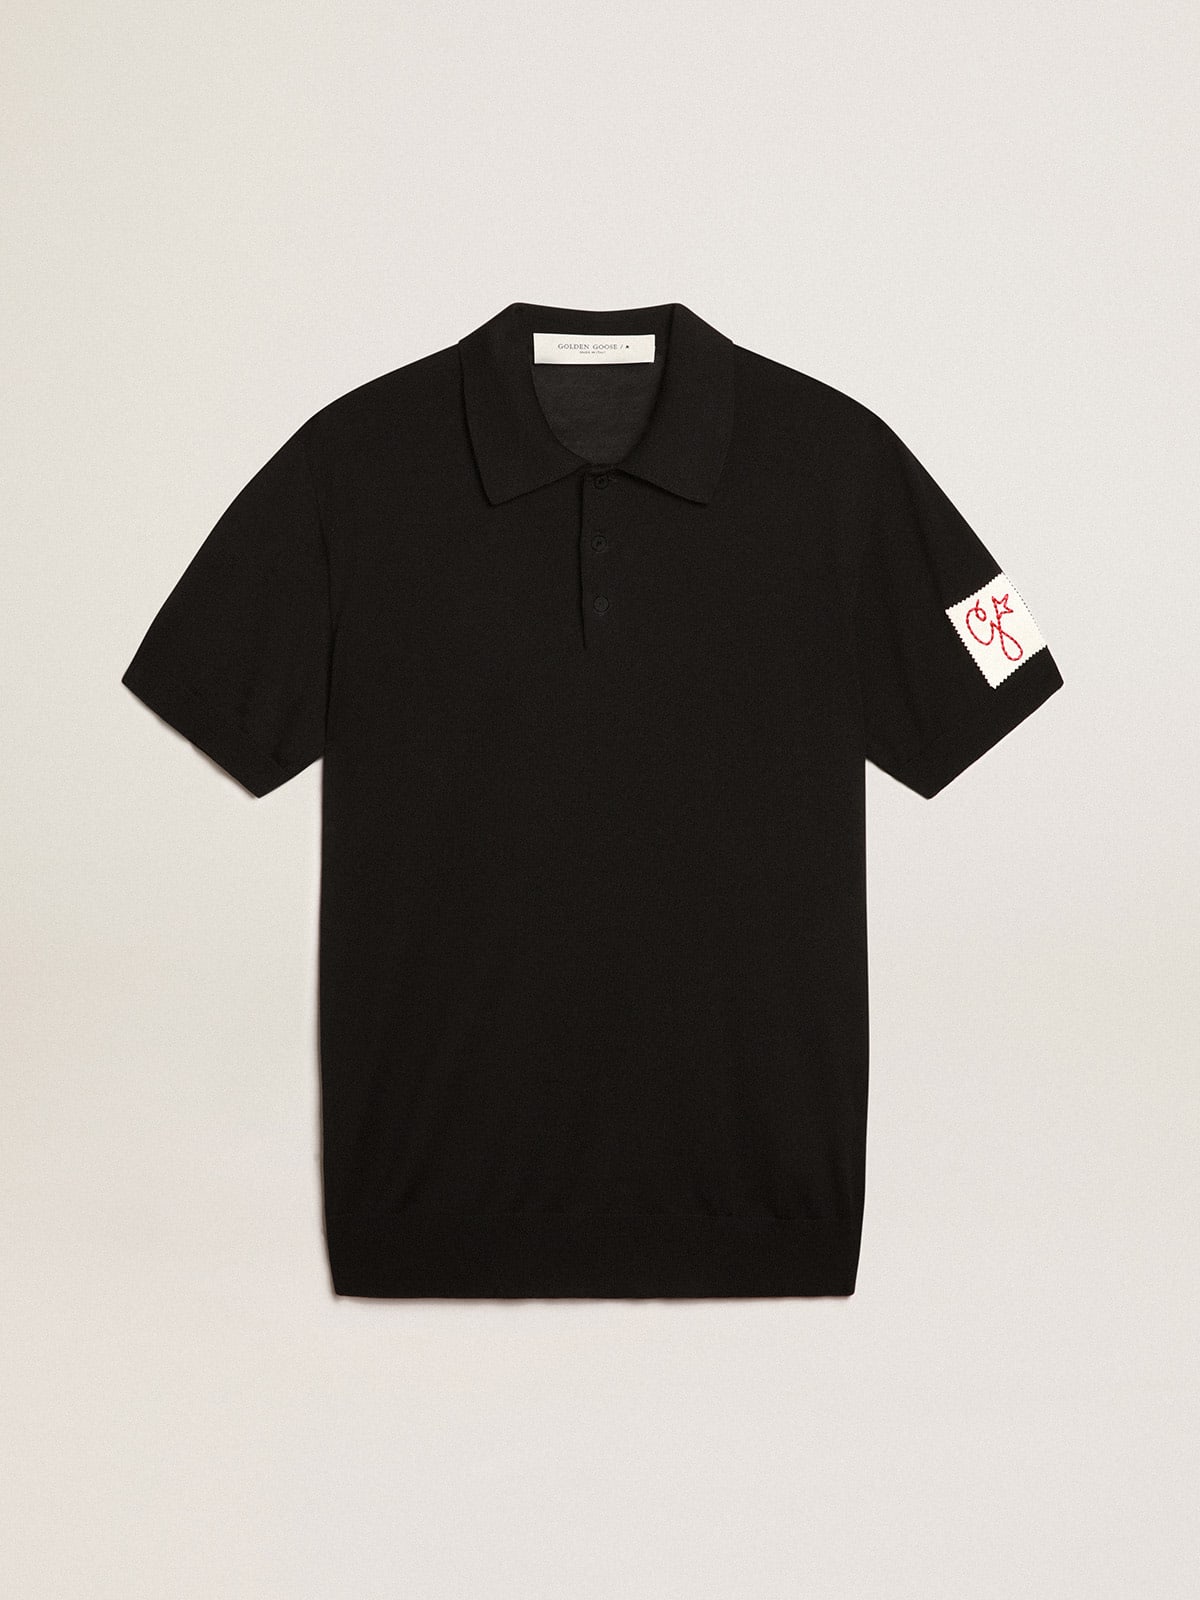 Men's short-sleeved polo shirt in black merino wool